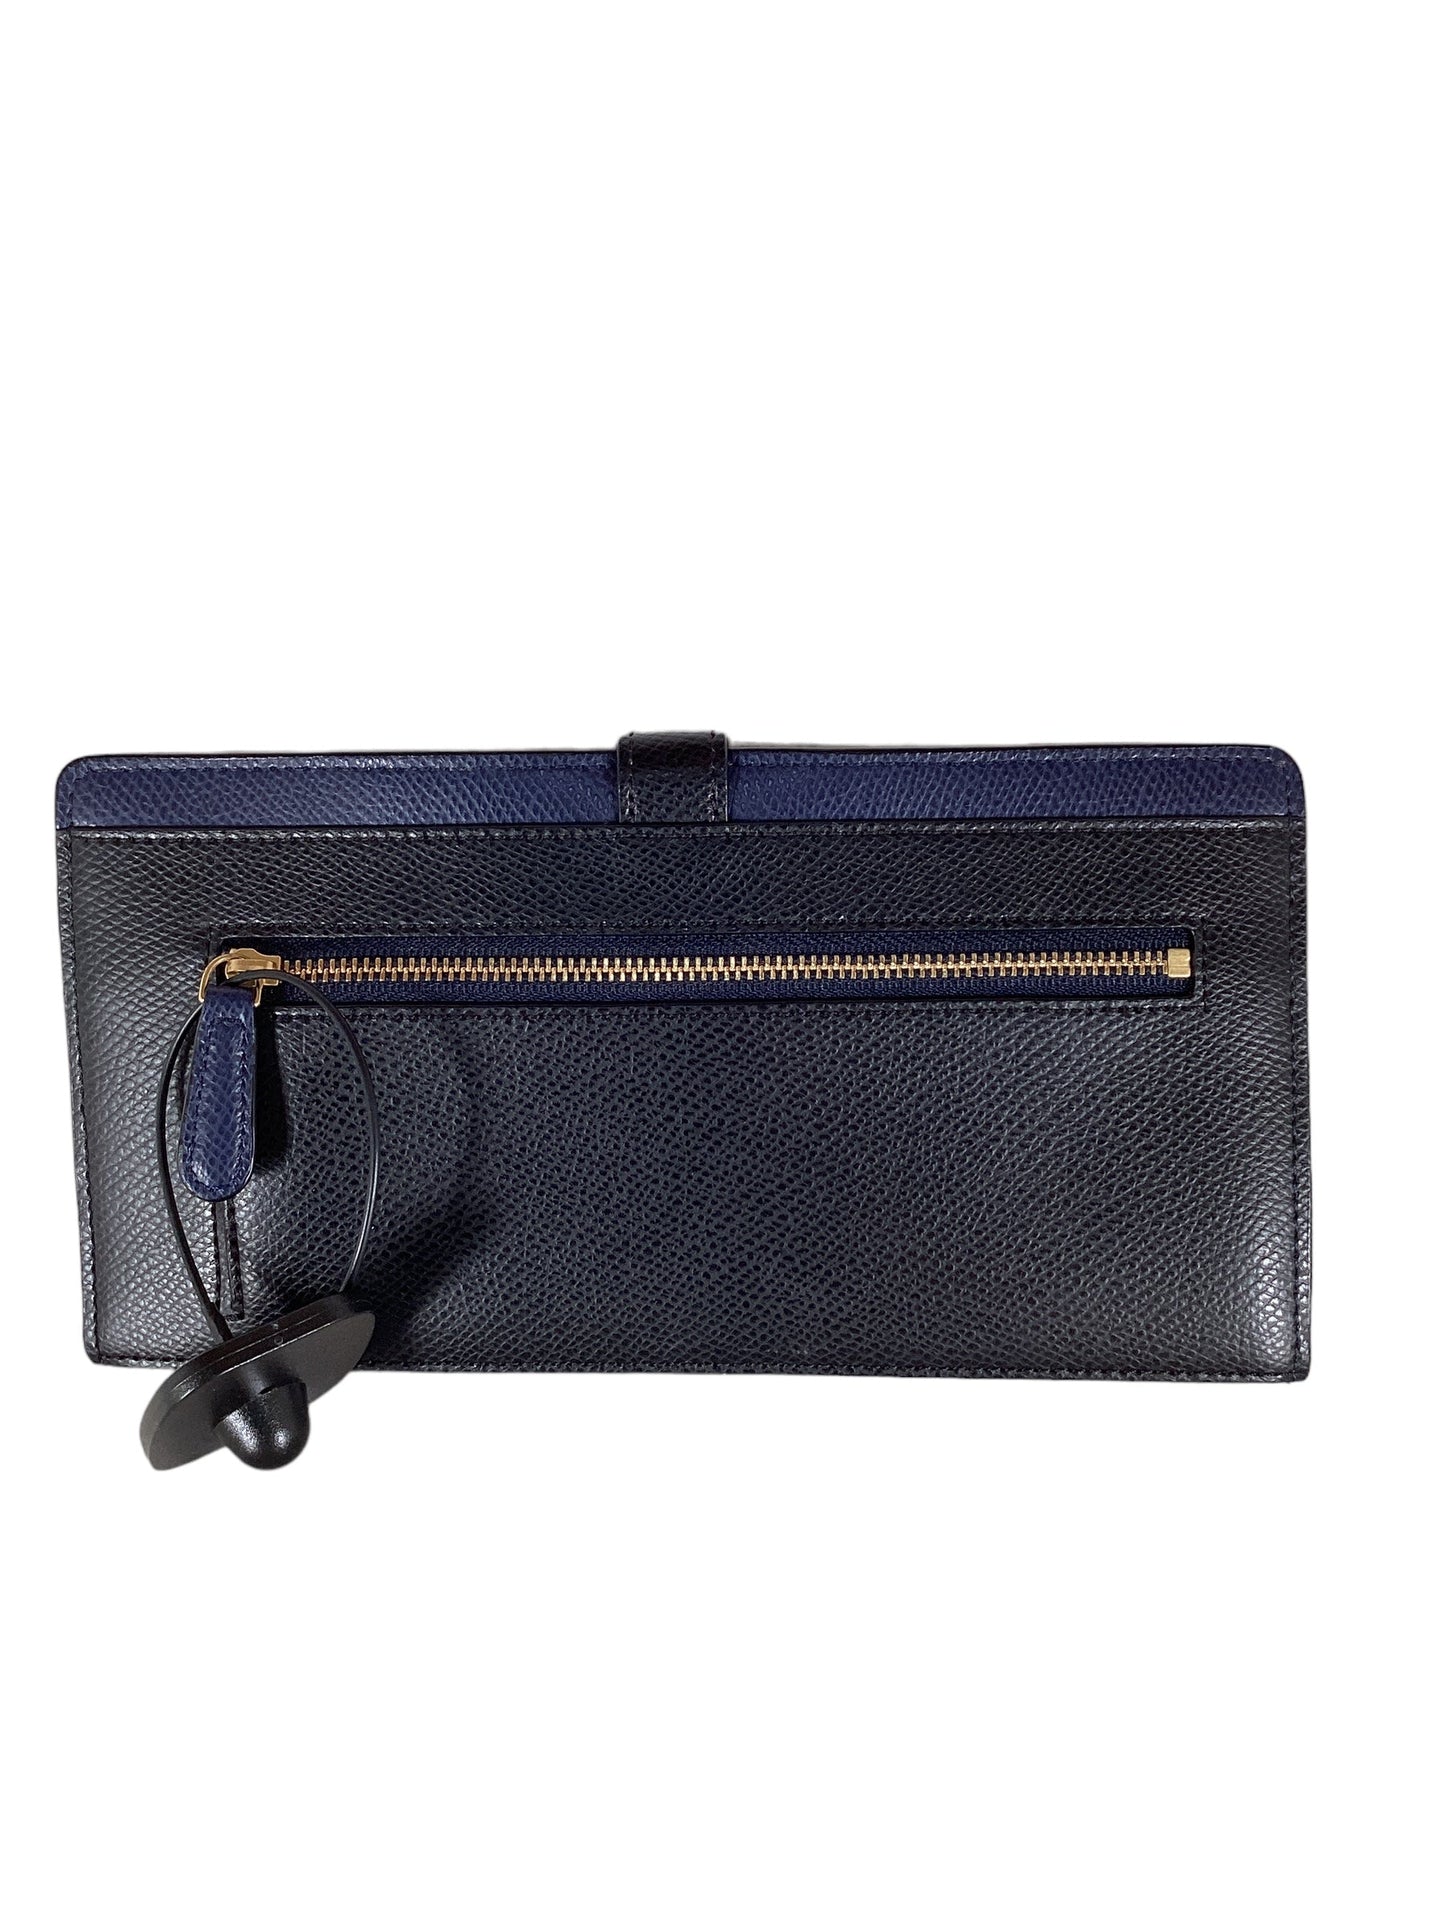 Wallet Vera Bradley, Size Medium